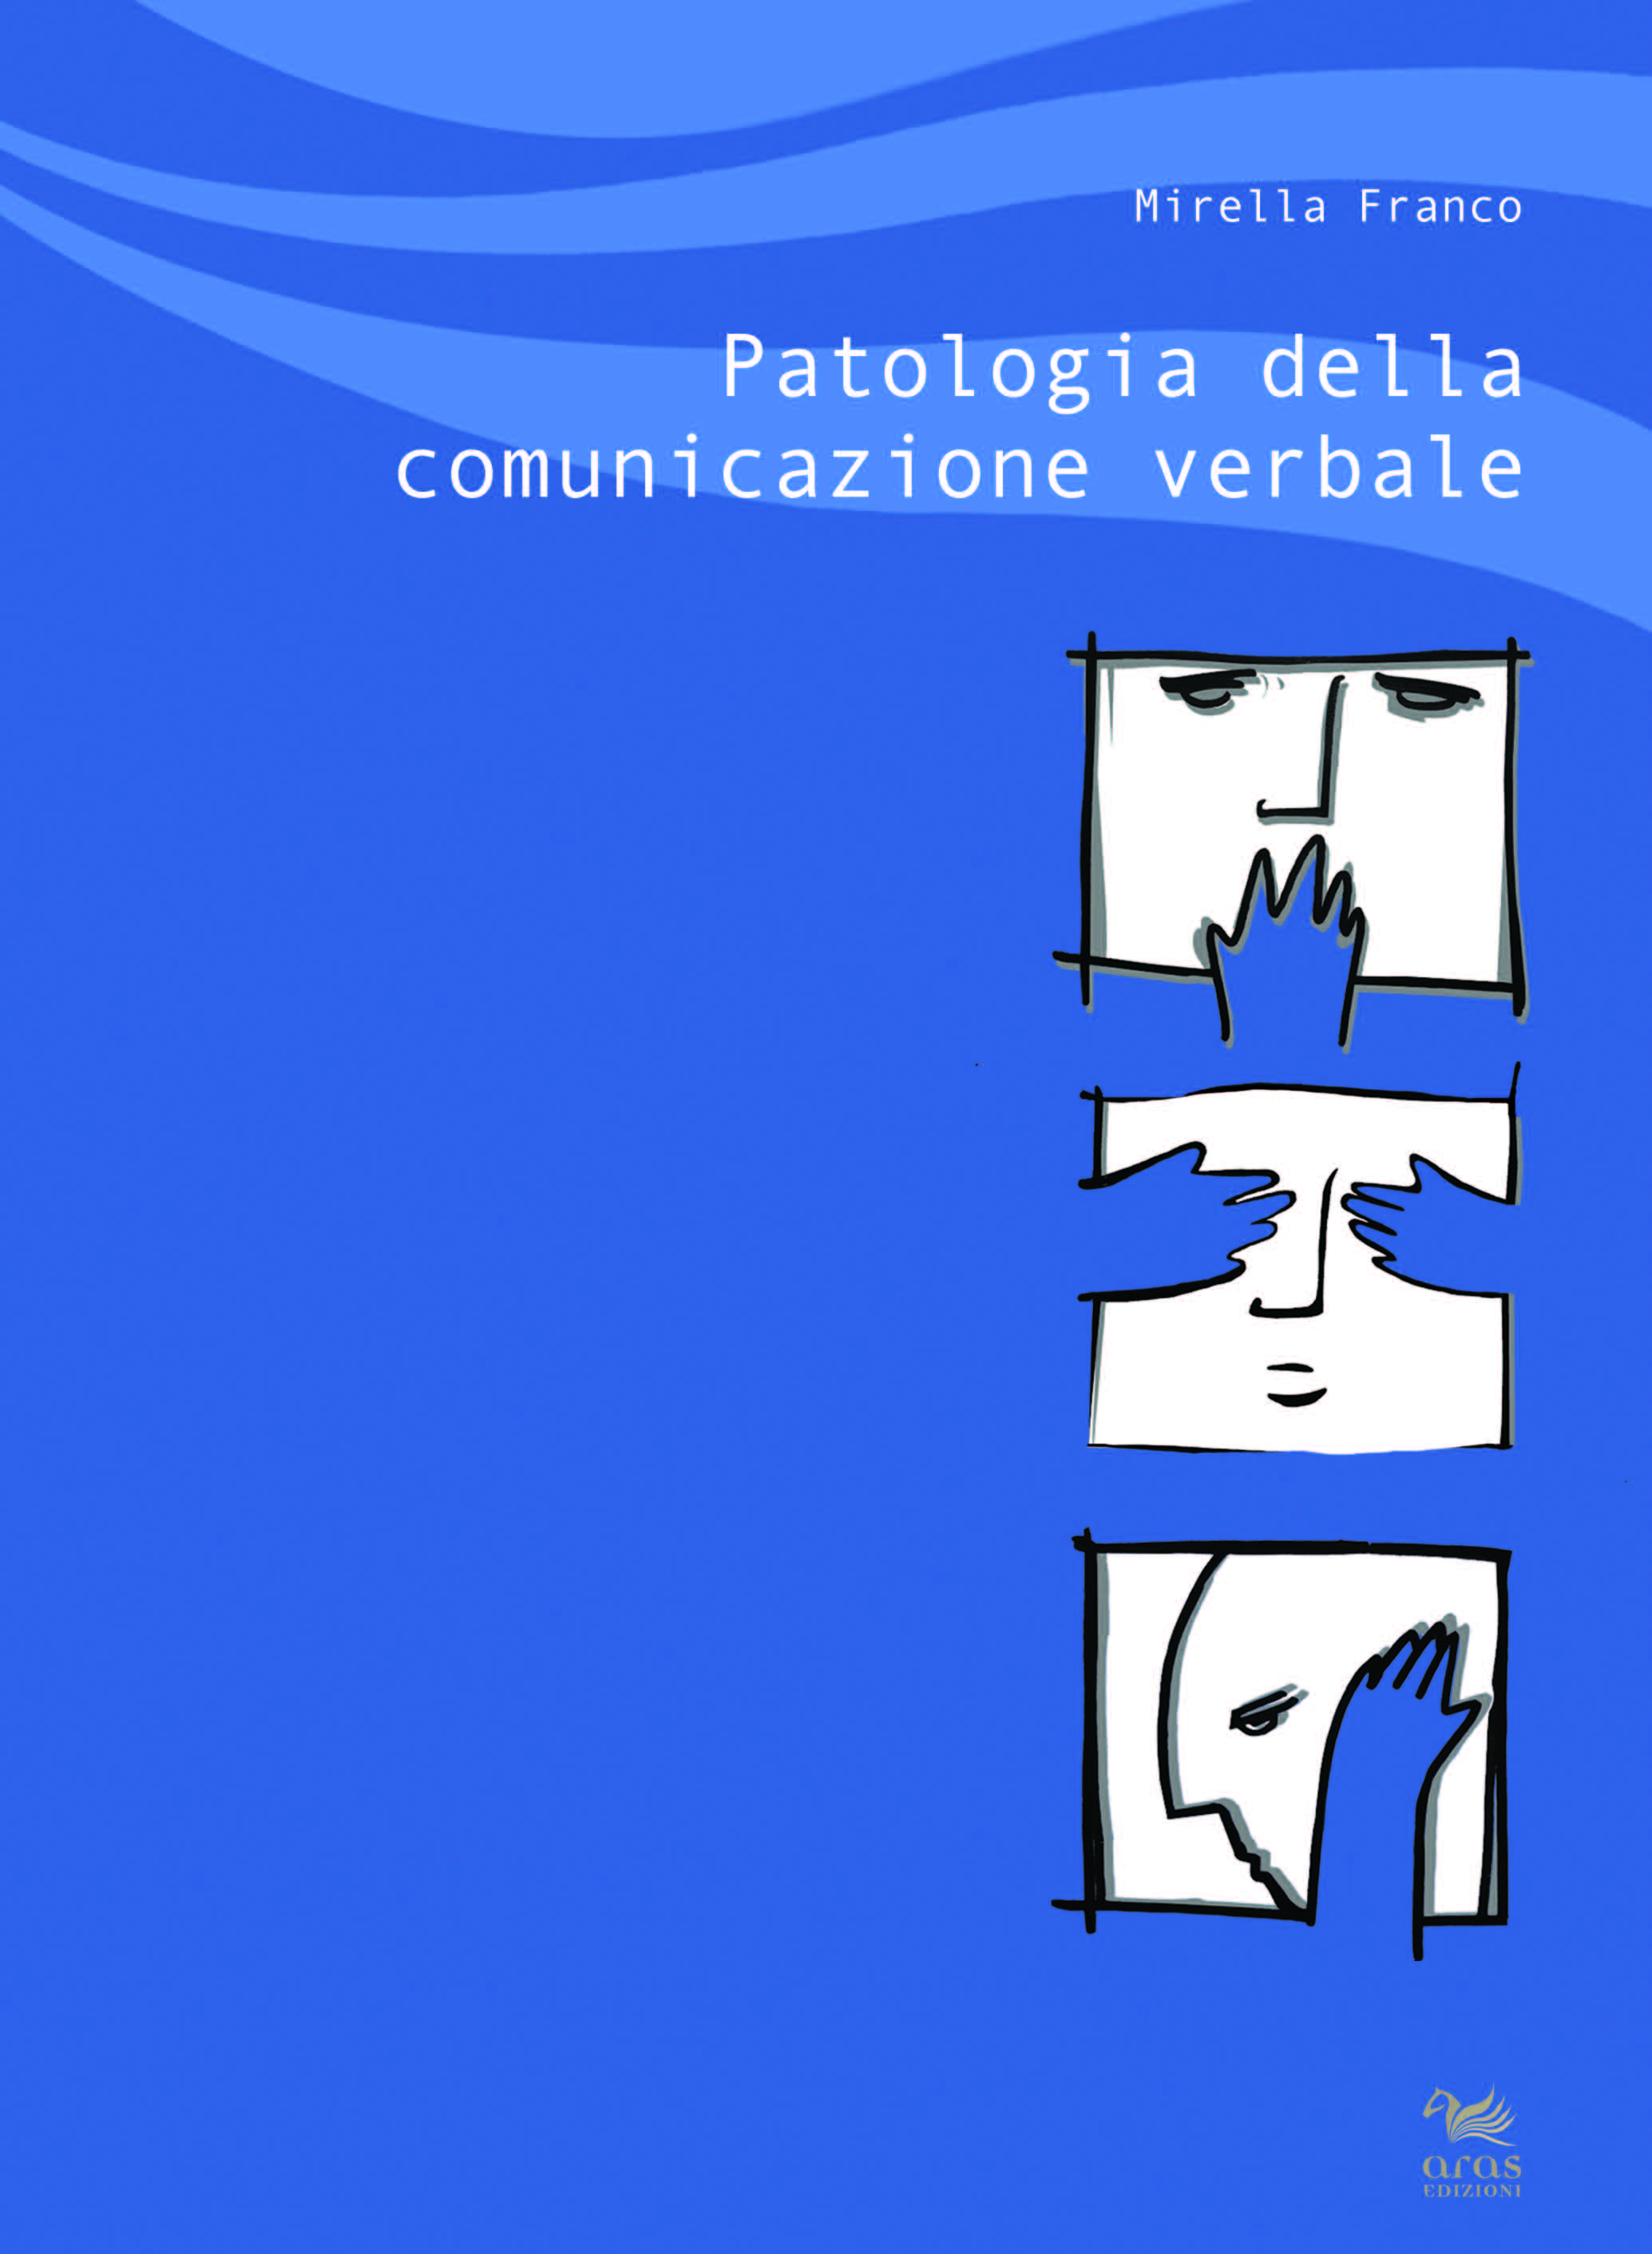 eBook, Patologia della comunicazione verbale, Franco, Mirella, Aras